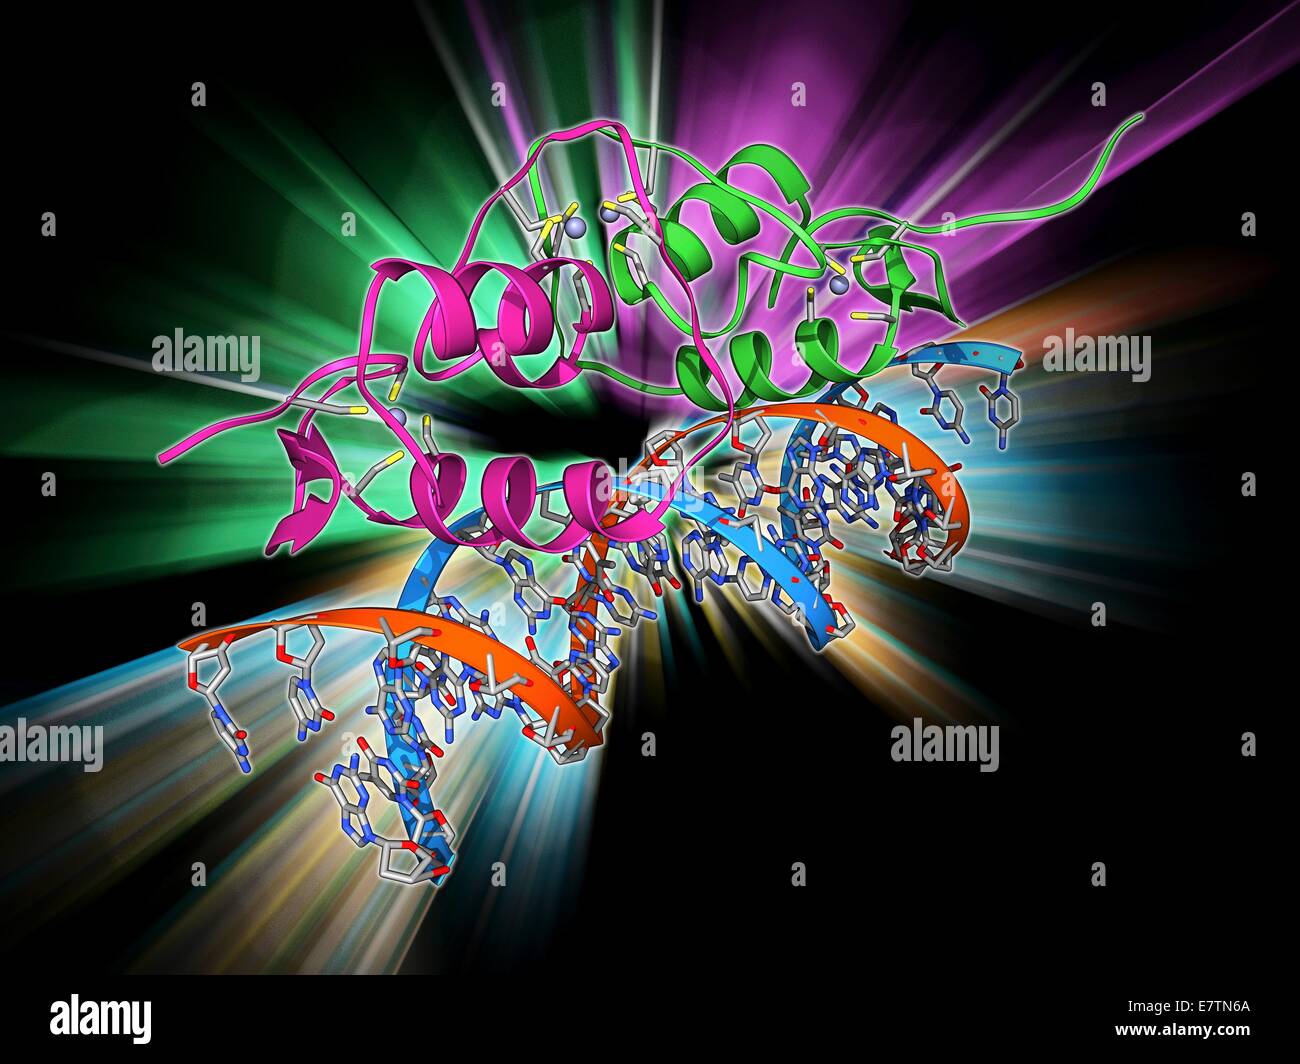 Östrogen-Rezeptor an DNA gebunden. Molekulares Modell des DNA-bindende Domäne (grün und rosa) von der Östrogen-Rezeptor gebunden an ein Molekül der DNA (Desoxyribonukleinsäure, blau und Orange). Östrogen-Rezeptoren sind cytoplasmatische Proteine, die Östrogene binden eine Stockfoto